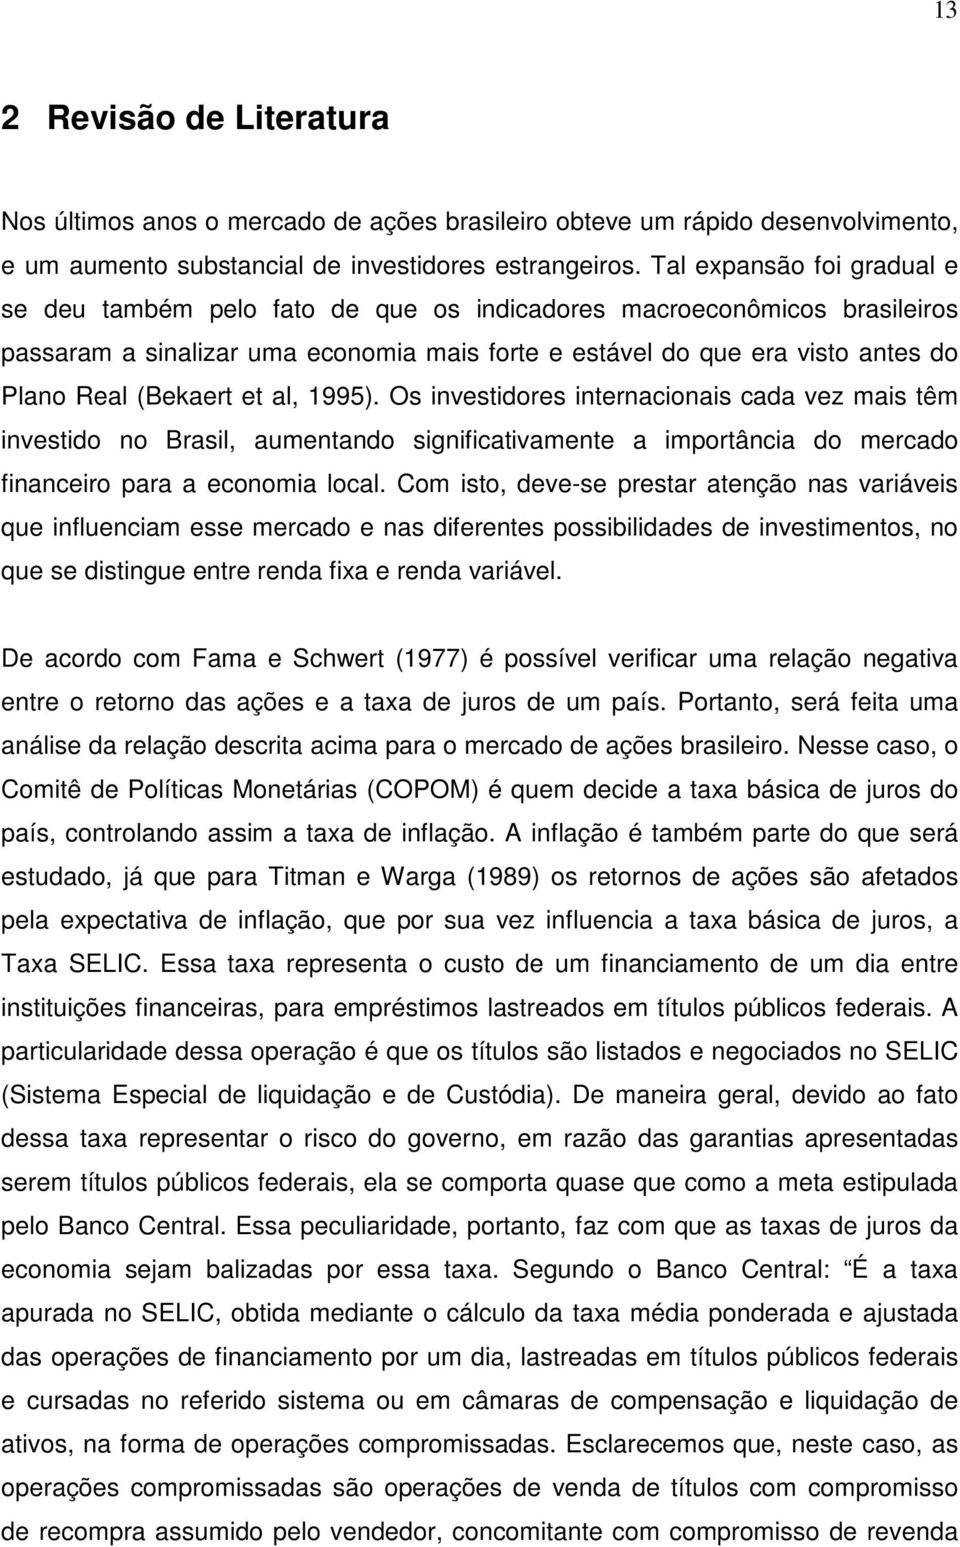 (Bekaert et al, 1995). Os investidores internacionais cada vez mais têm investido no Brasil, aumentando significativamente a importância do mercado financeiro para a economia local.